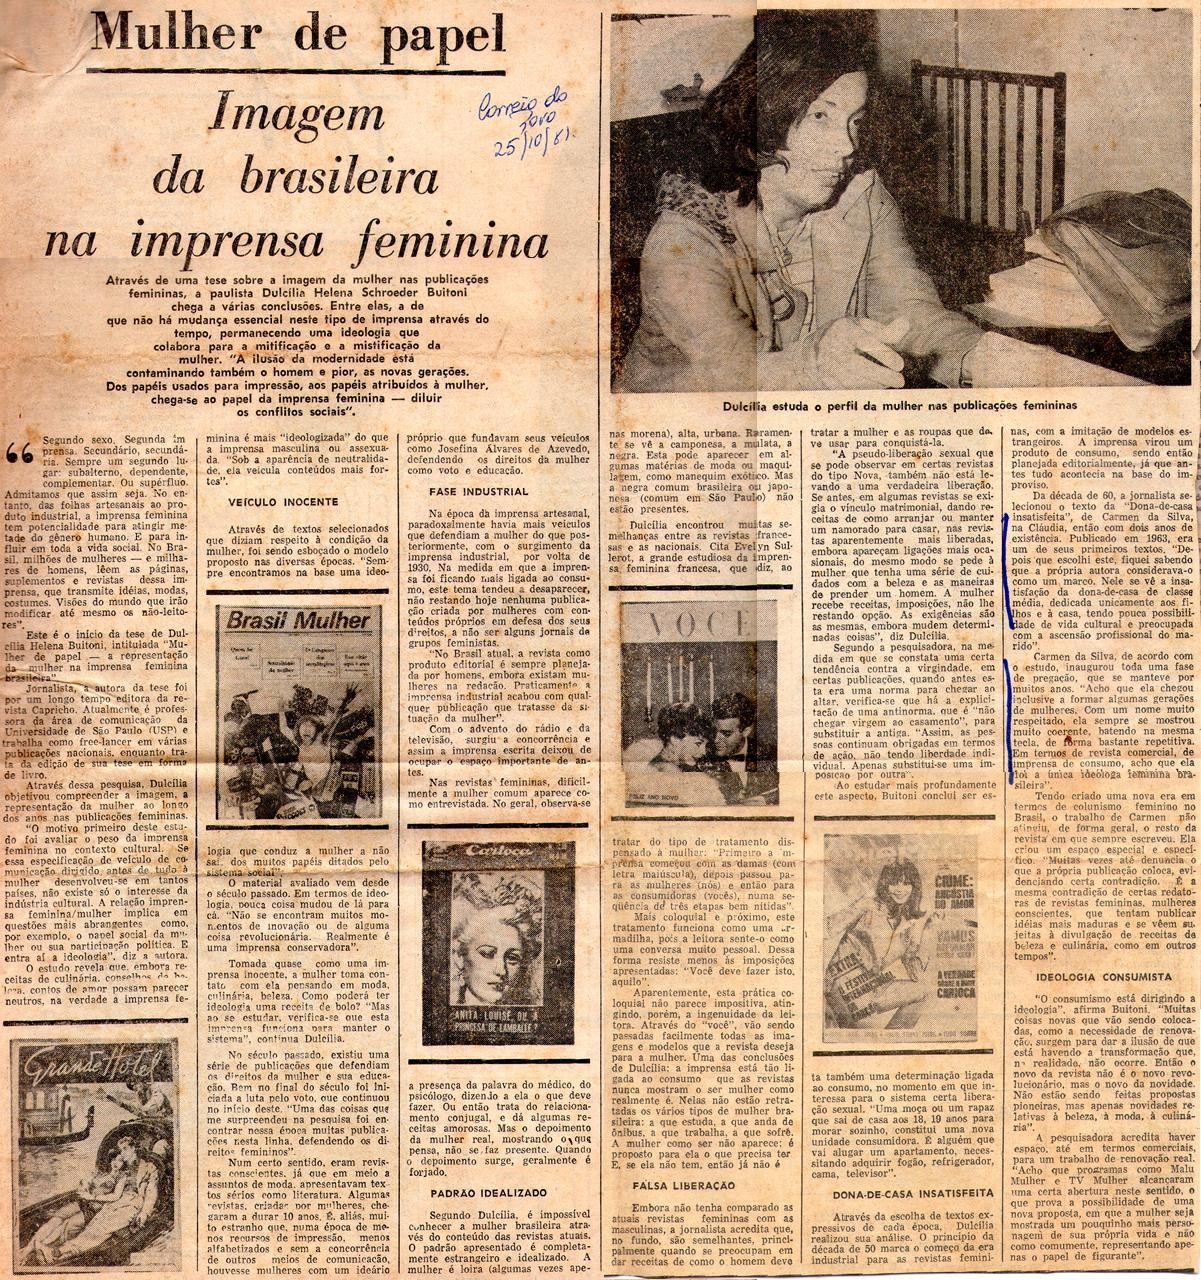 25 de Outubro de 1981 - Correio do Povo. Imagem da brasileira na imprensa feminina.